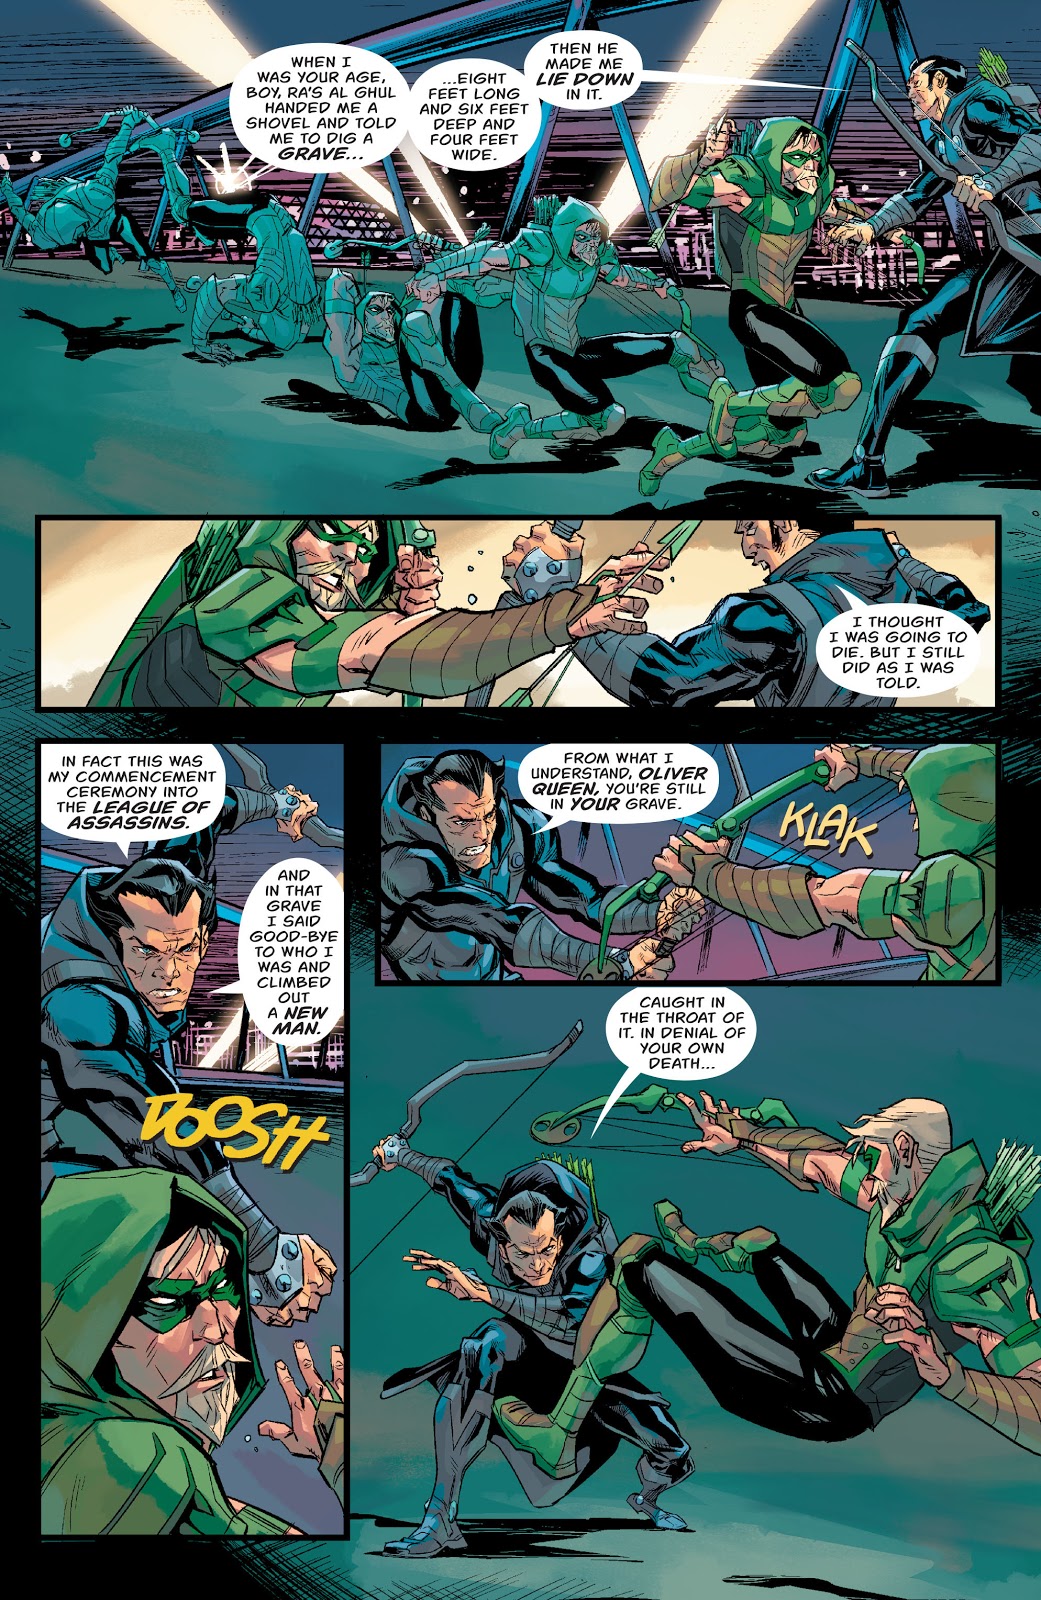 Green Arrow VS Dark Archer (Rebirth)